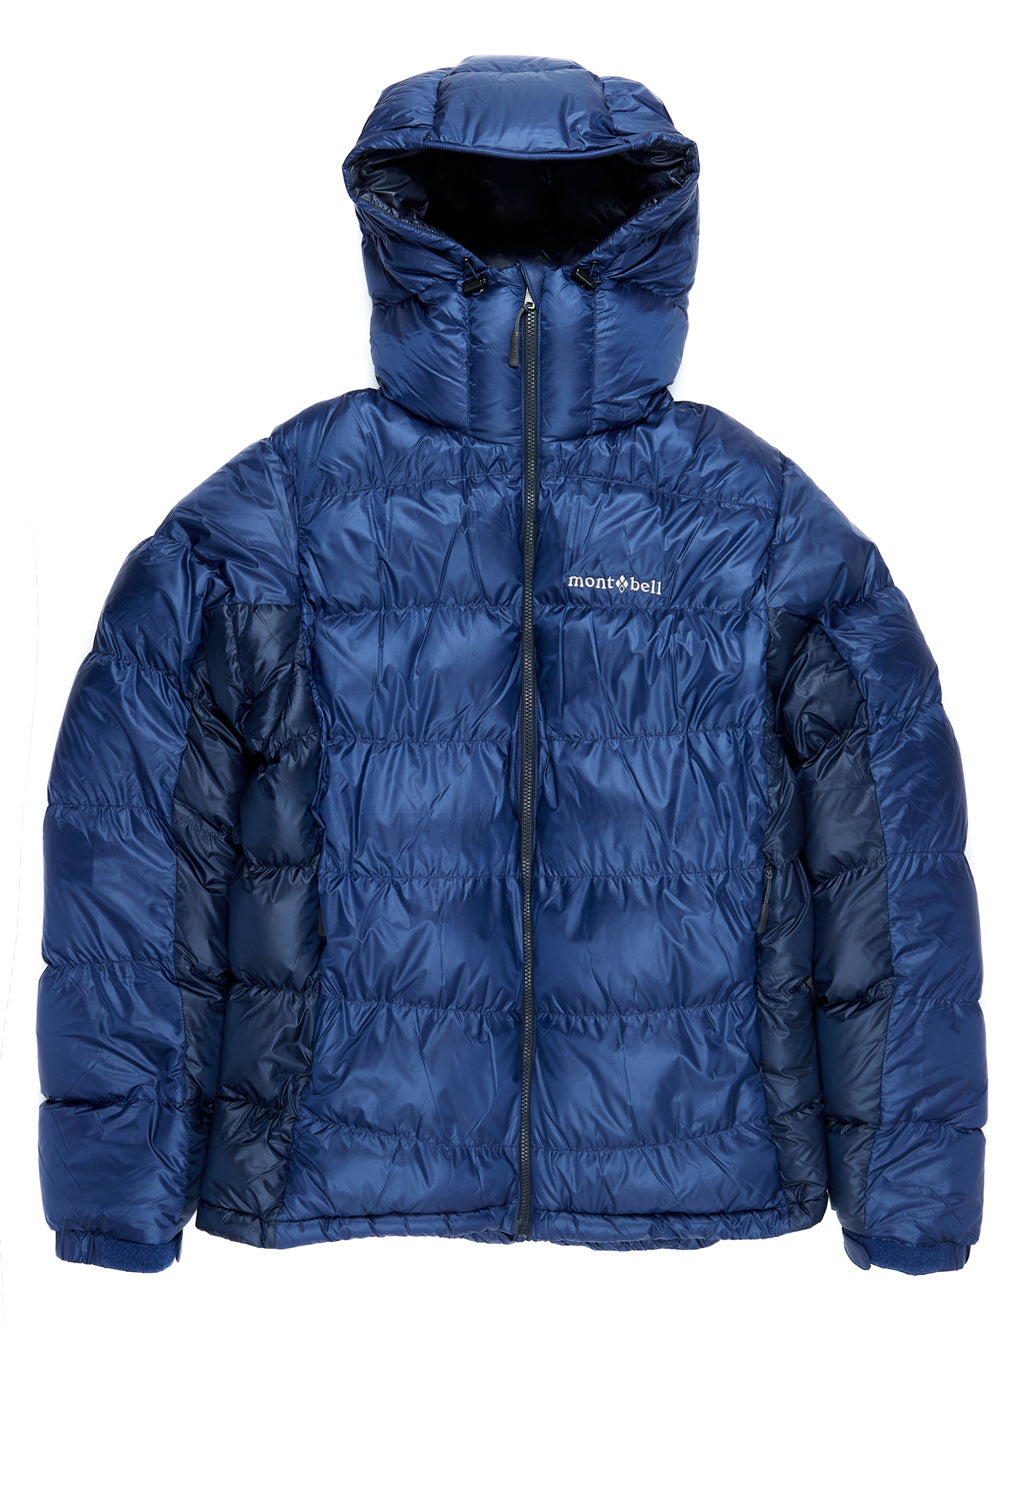 高級ブランド montbell puffer jacket - ジャケット/アウター